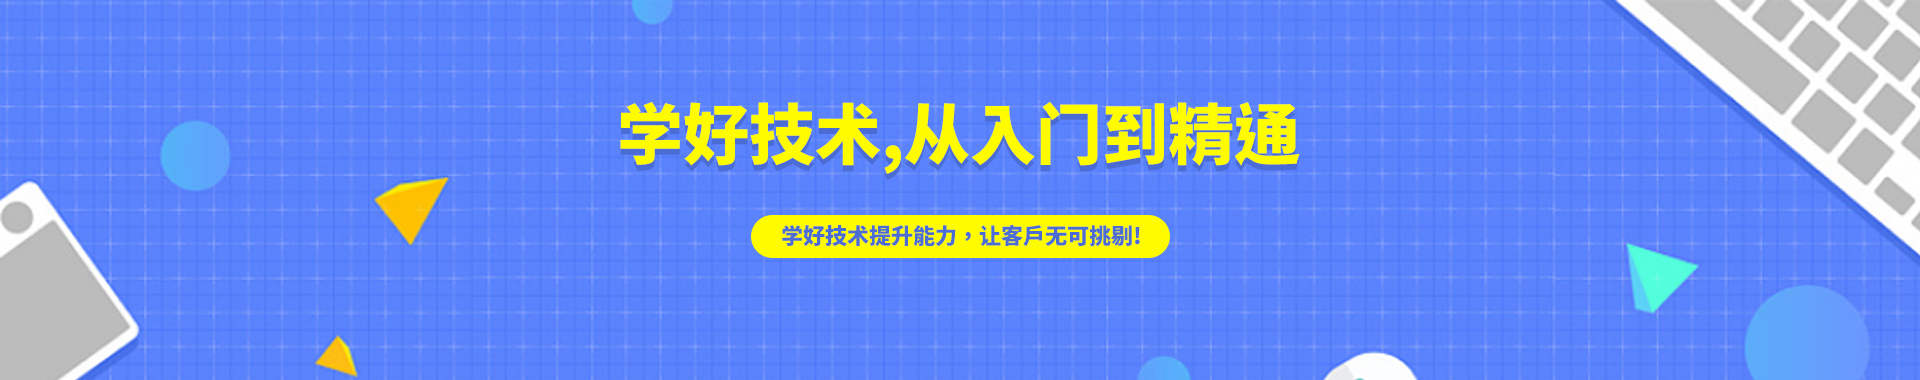 广州创星职业技能培训中心